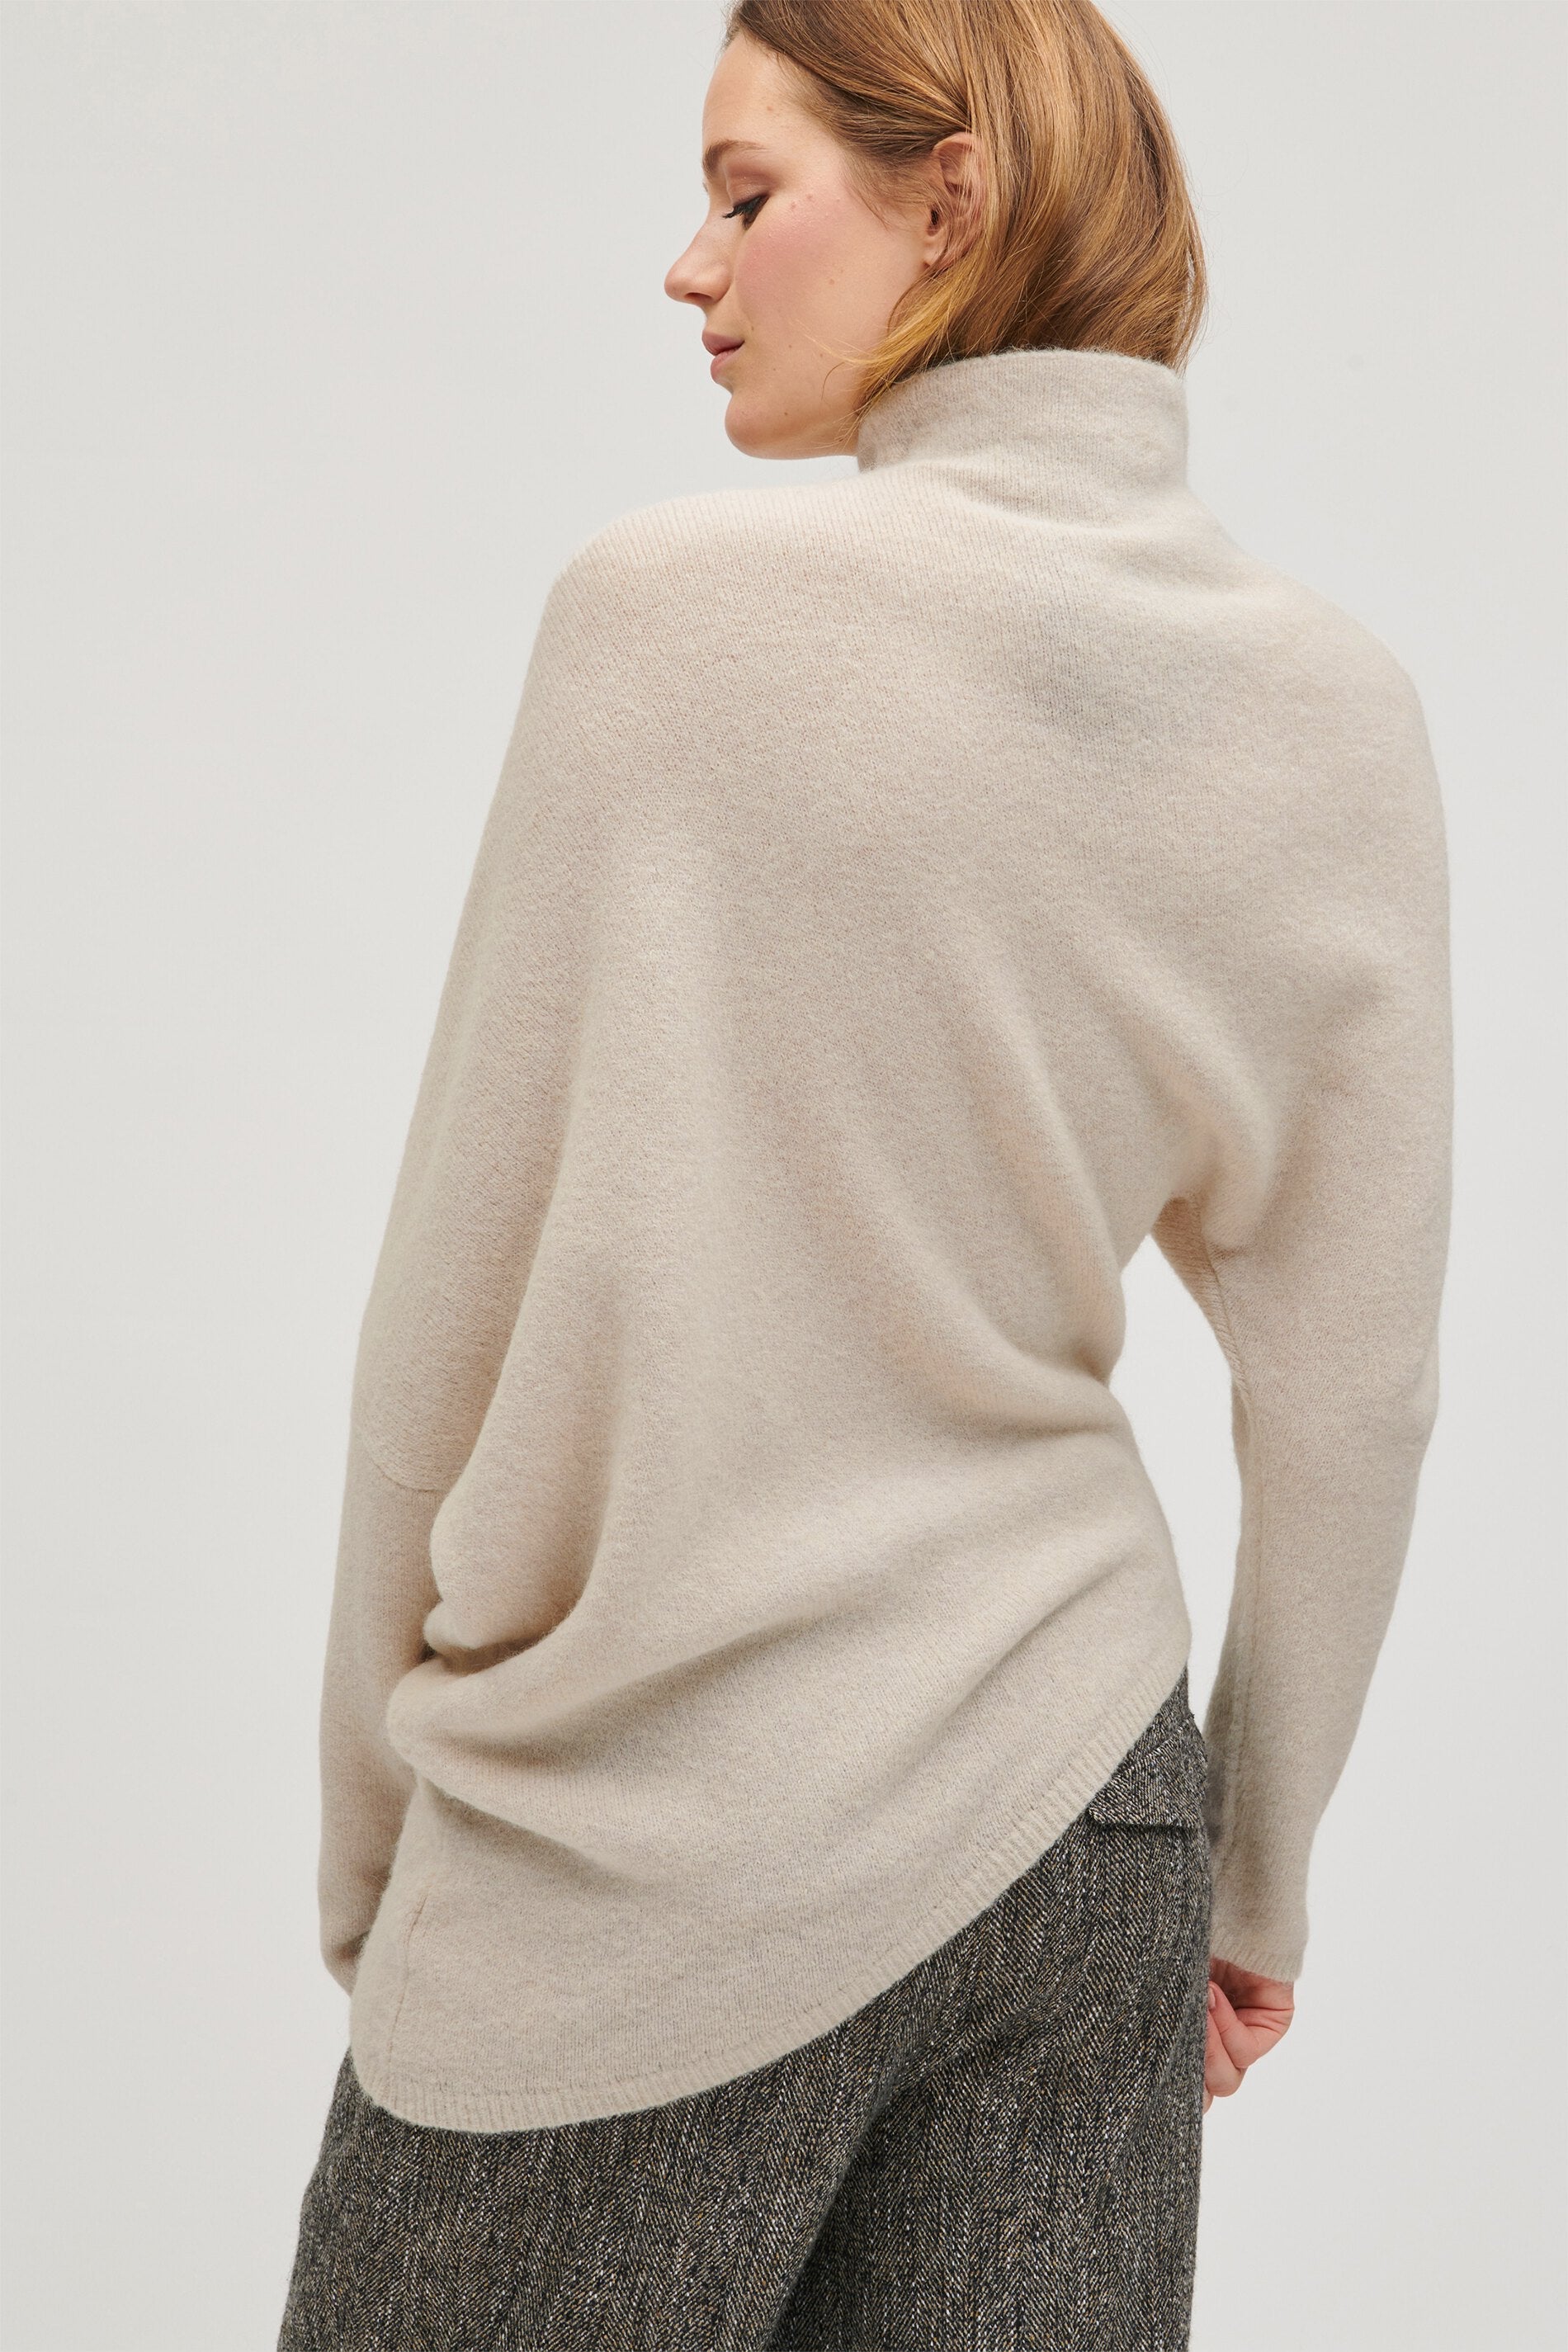 LUISA CERANO-OUTLET-SALE-Asymmetrischer Pullover-Strick-by-ARCHIVIST